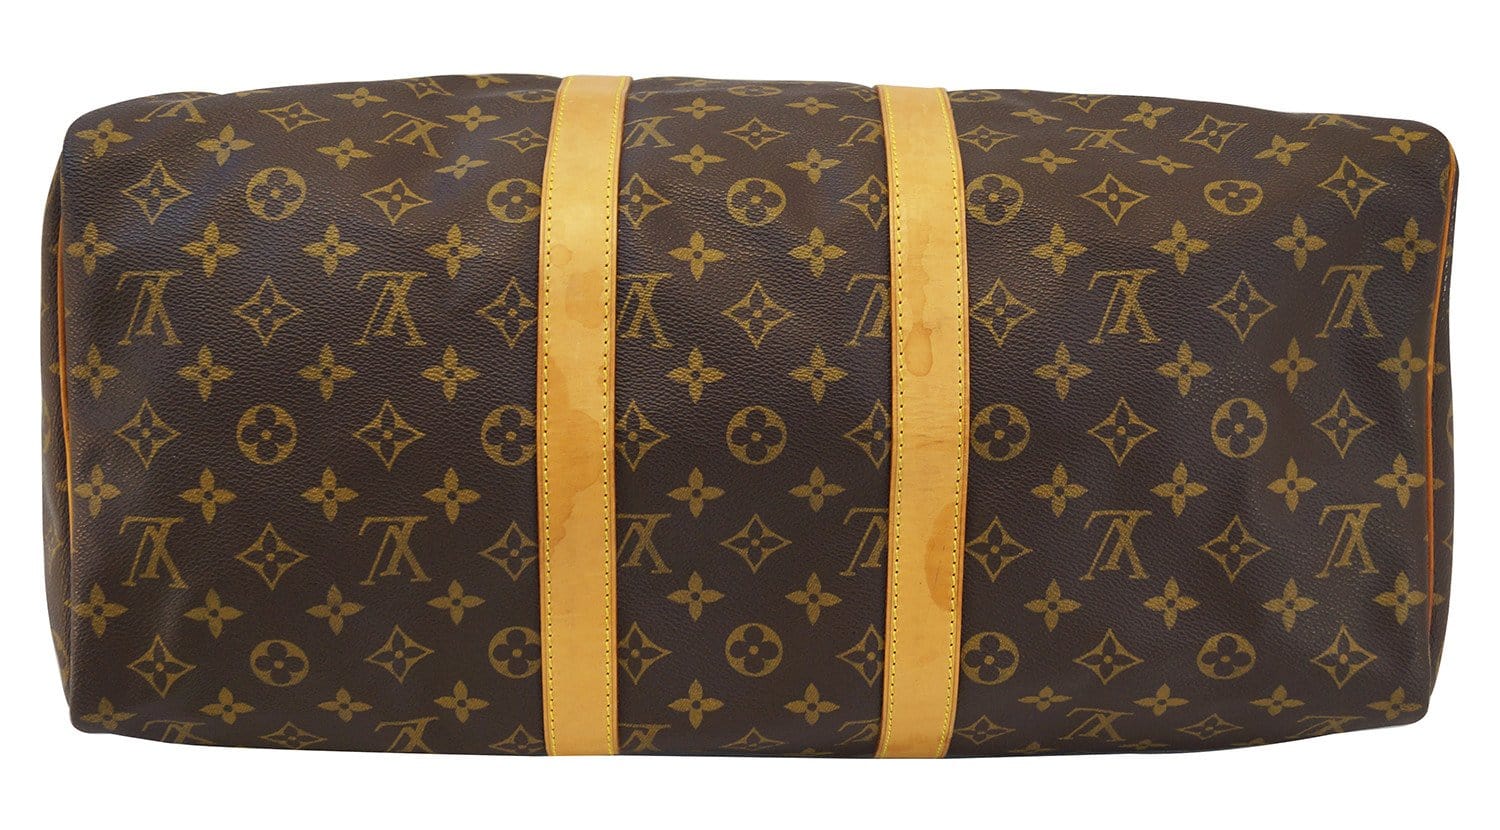 Louis Vuitton Lv Bag (boston Copley) $2200